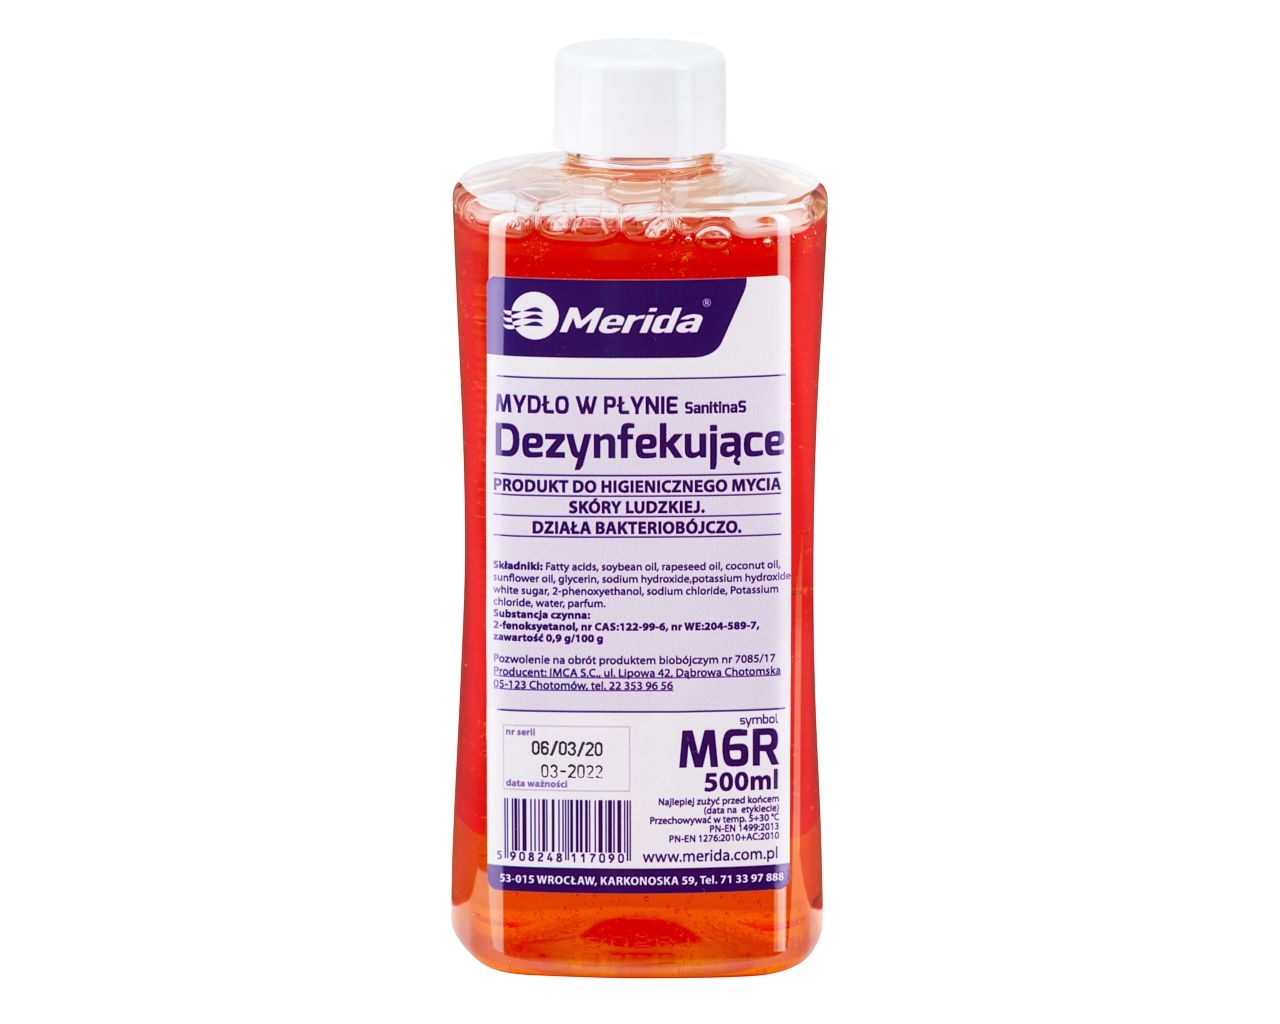 Mydło w płynie dezynfekujące MERIDA, butelka 500 ml